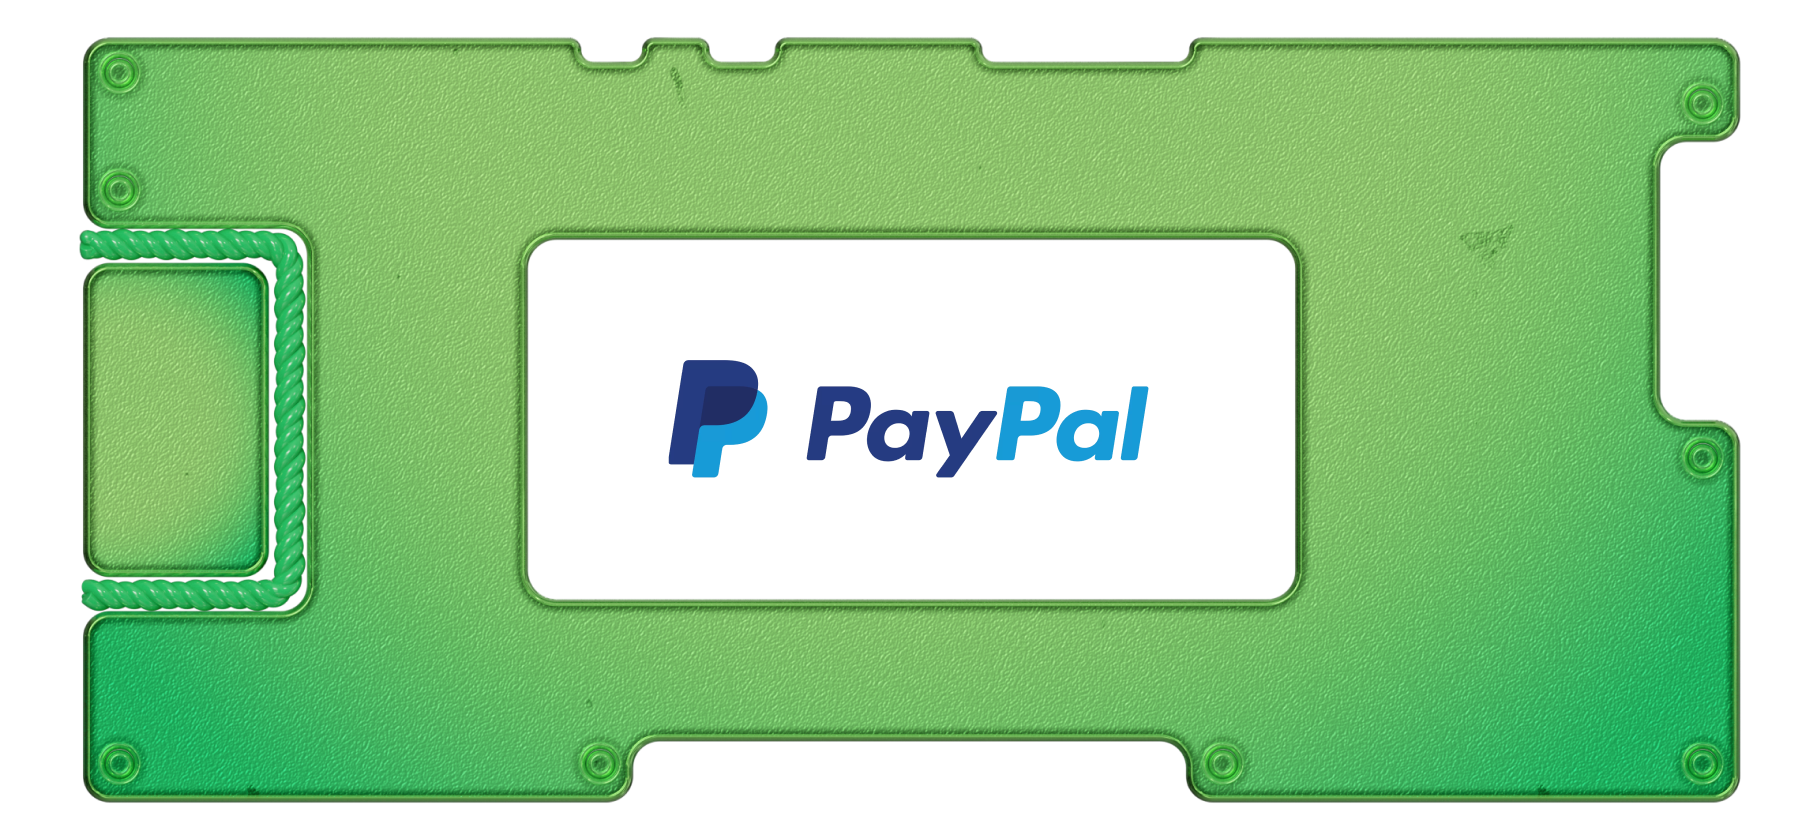 Изучаем отчет PayPal: паранормальный рост на фоне слабых результатов